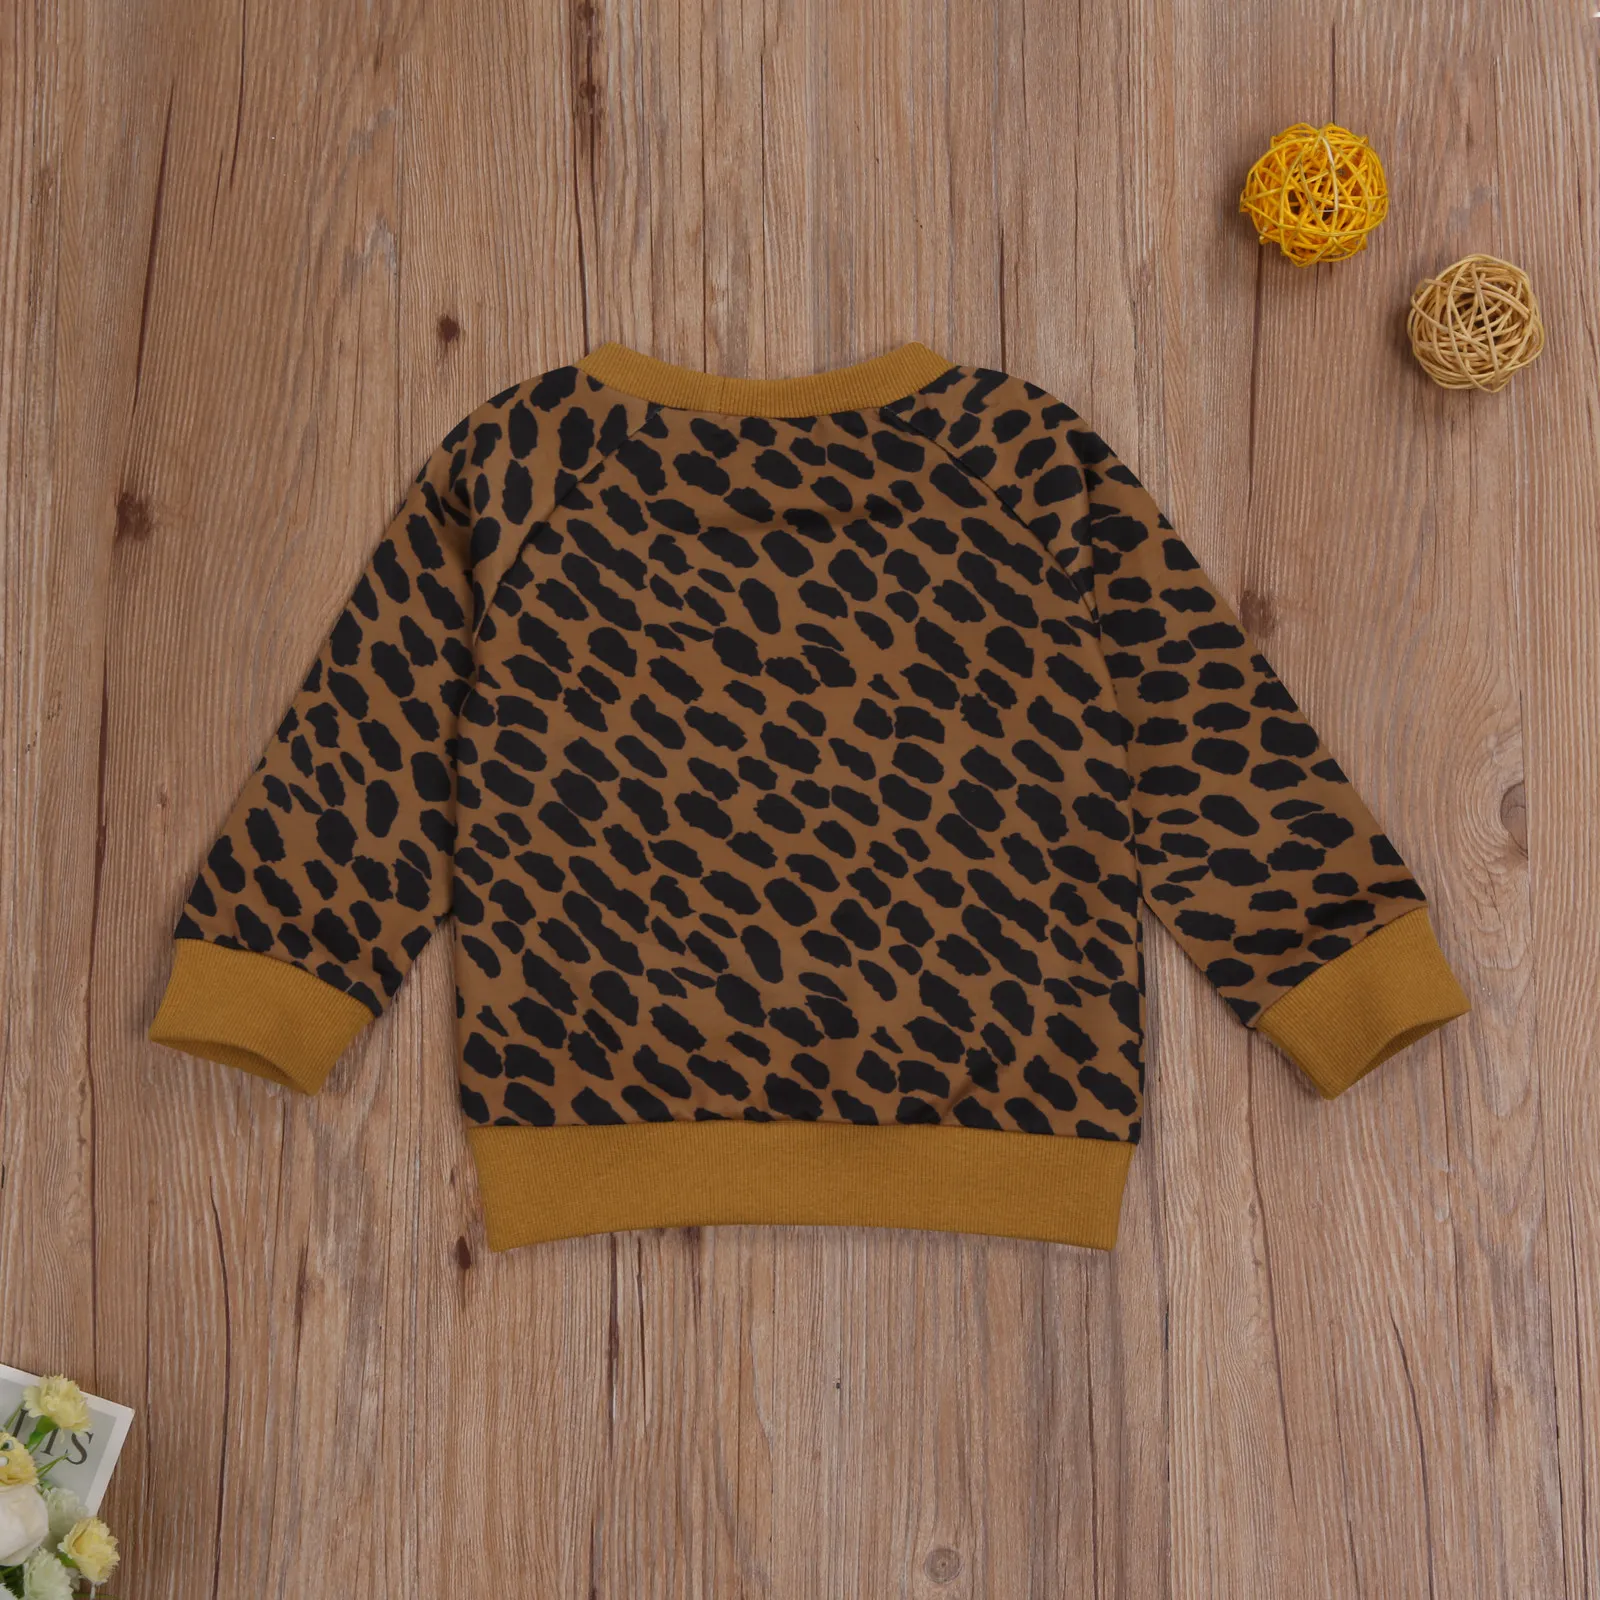 0-3Y outono inverno criança bebê garoto meninas meninos leopard sweatshirts manga longa letra Mama mini roupas casuais 210515